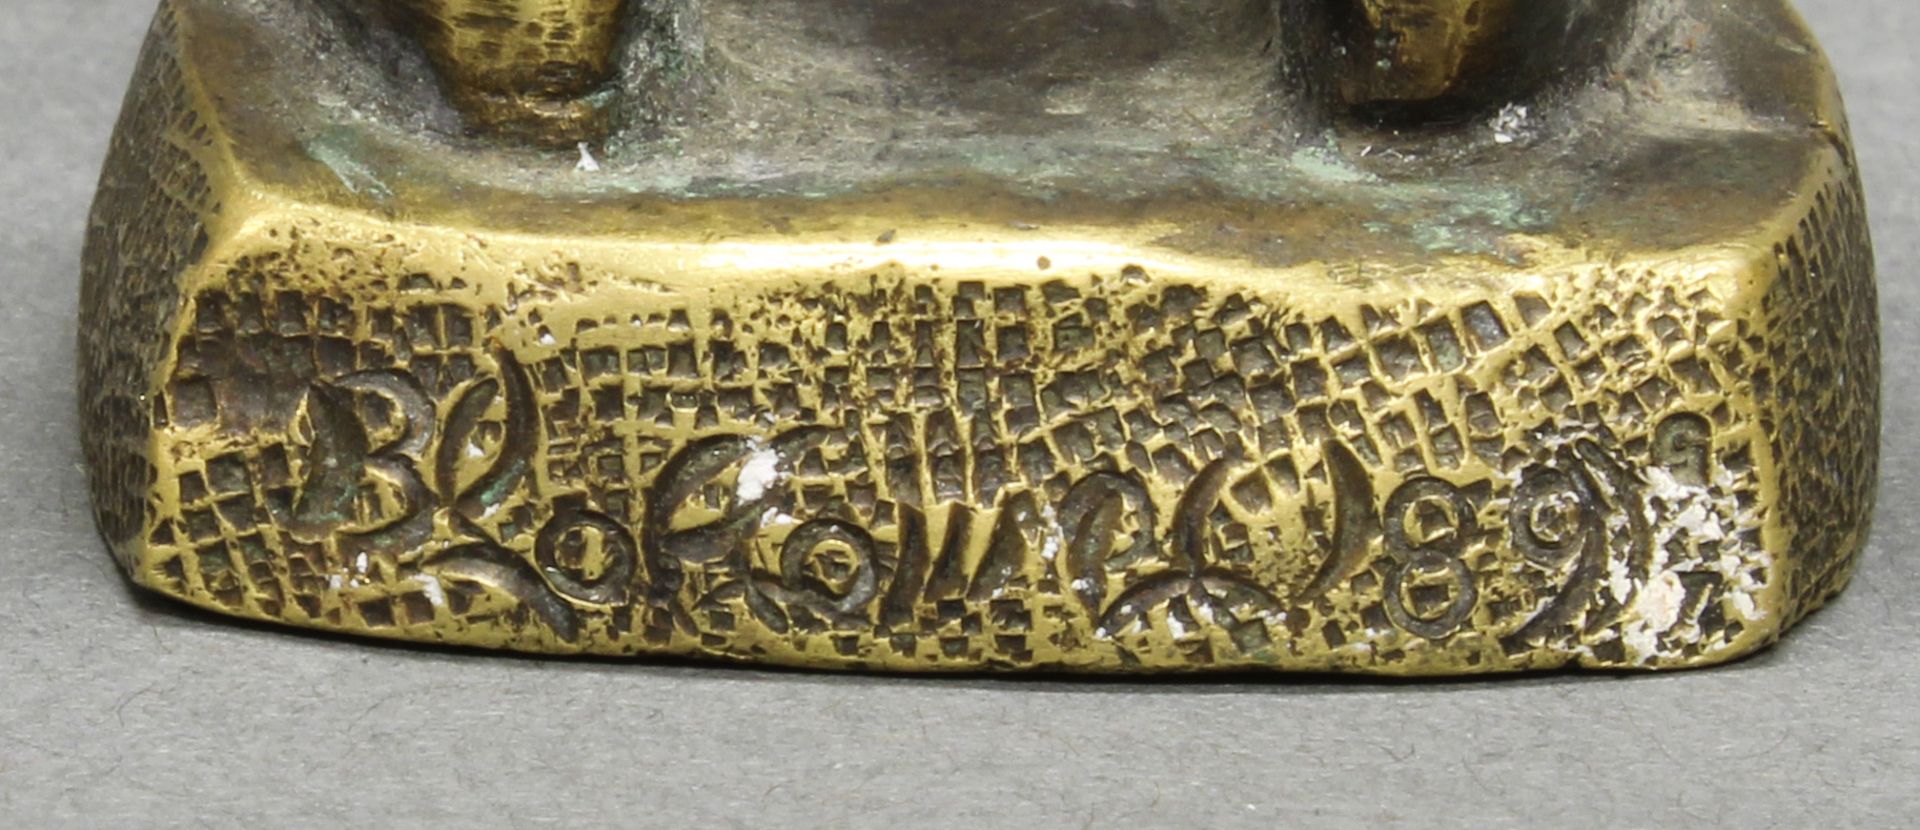 Bronze/Messing, "Stehender Jüngling", auf der Plinthe unleserlich signiert, datiert (18)89, ca. 15  - Bild 3 aus 4